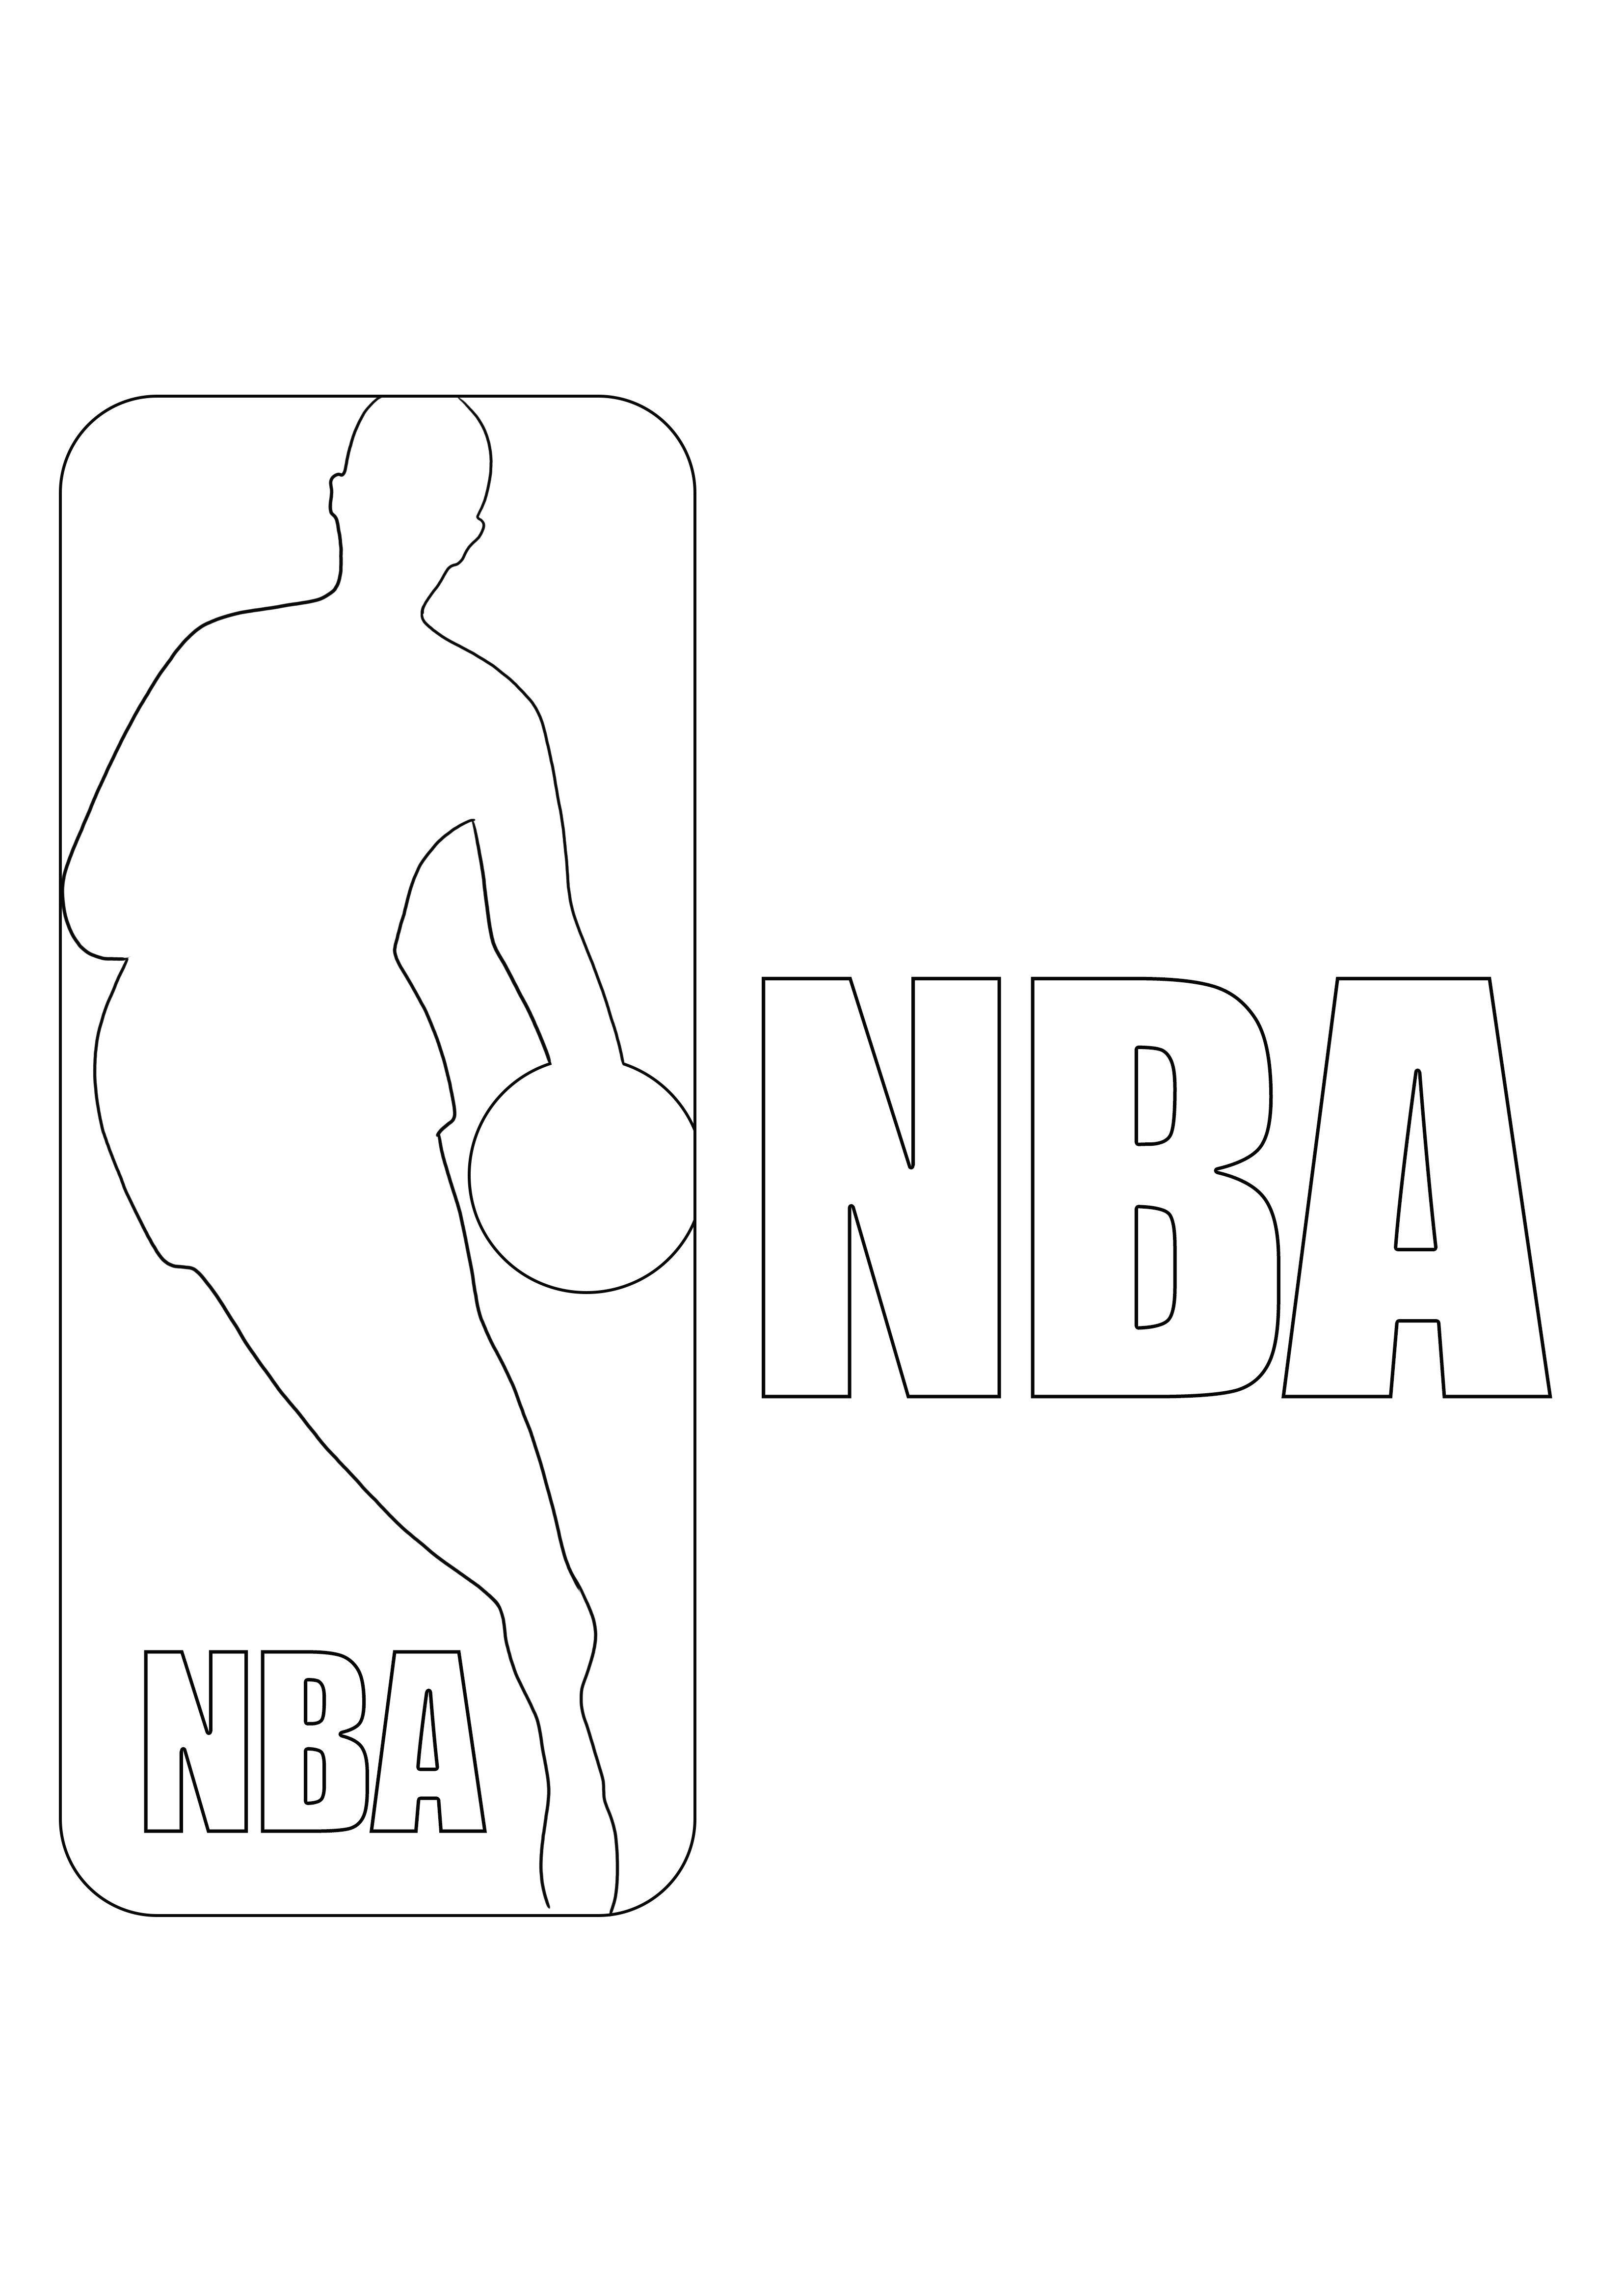 Logotipo de la NBA para imprimir gratis a color para niños que aman la NBA y los deportes